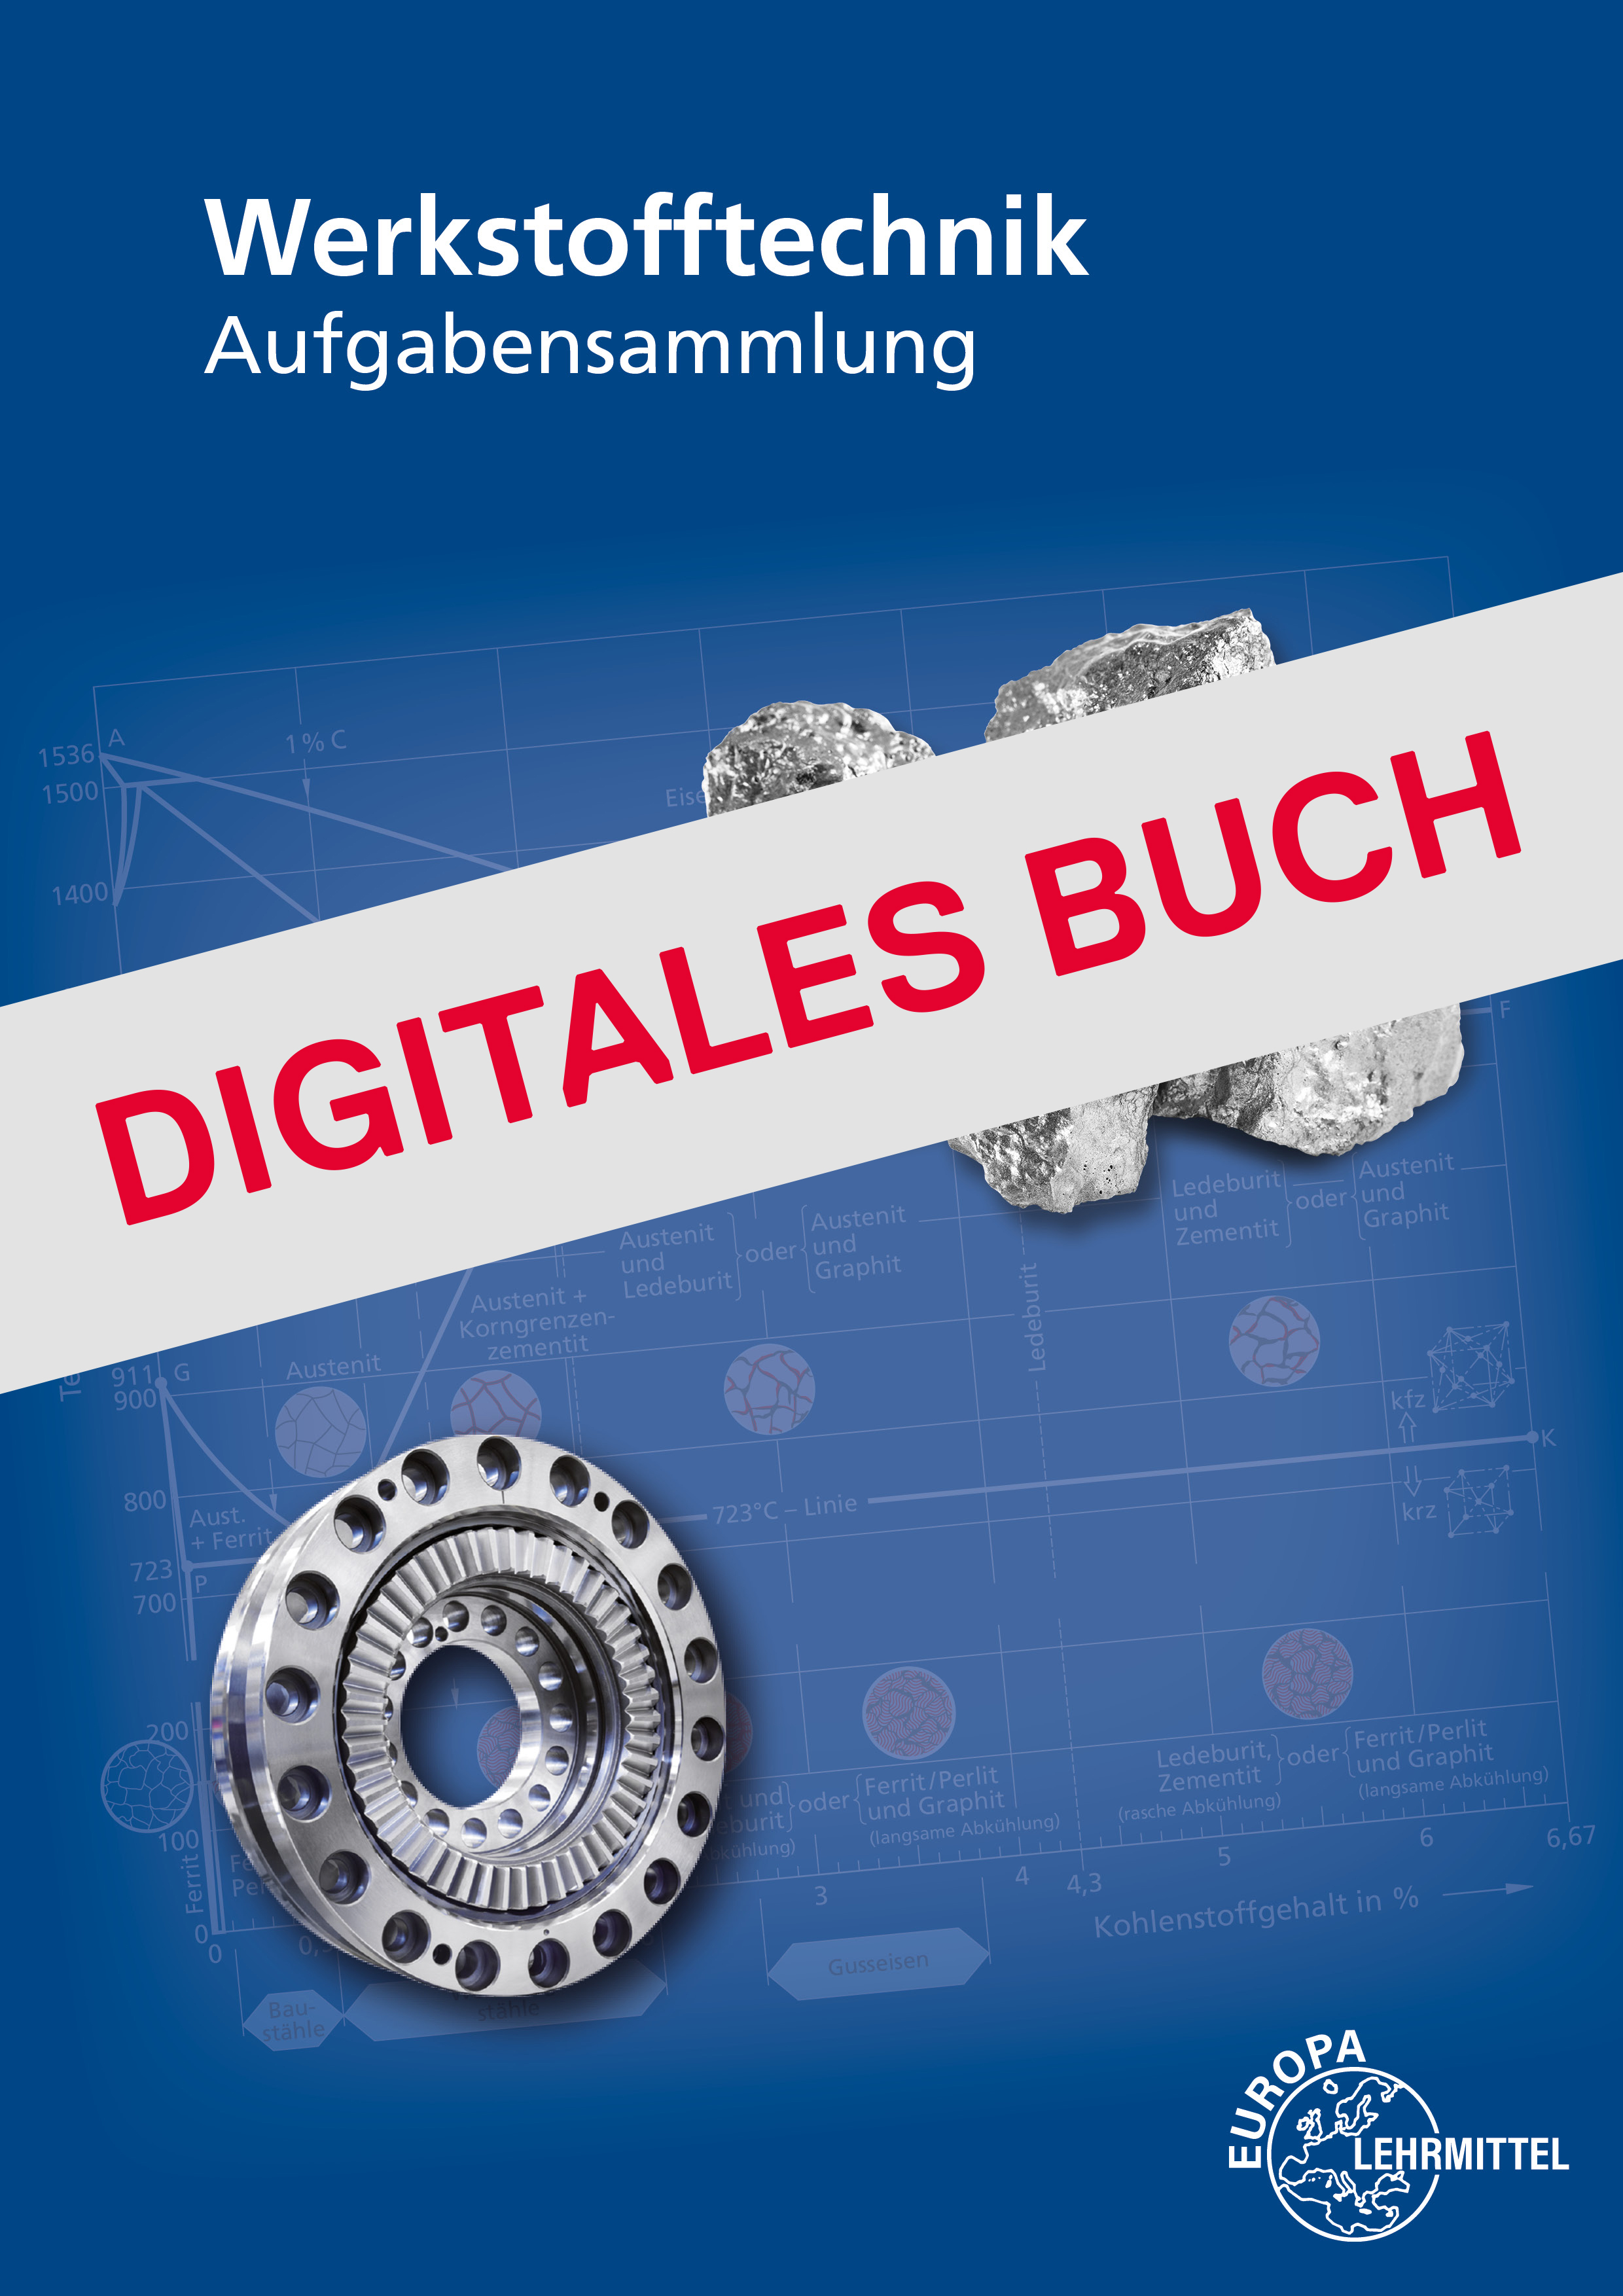 Werkstofftechnik Aufgabensammlung - Digitales Buch